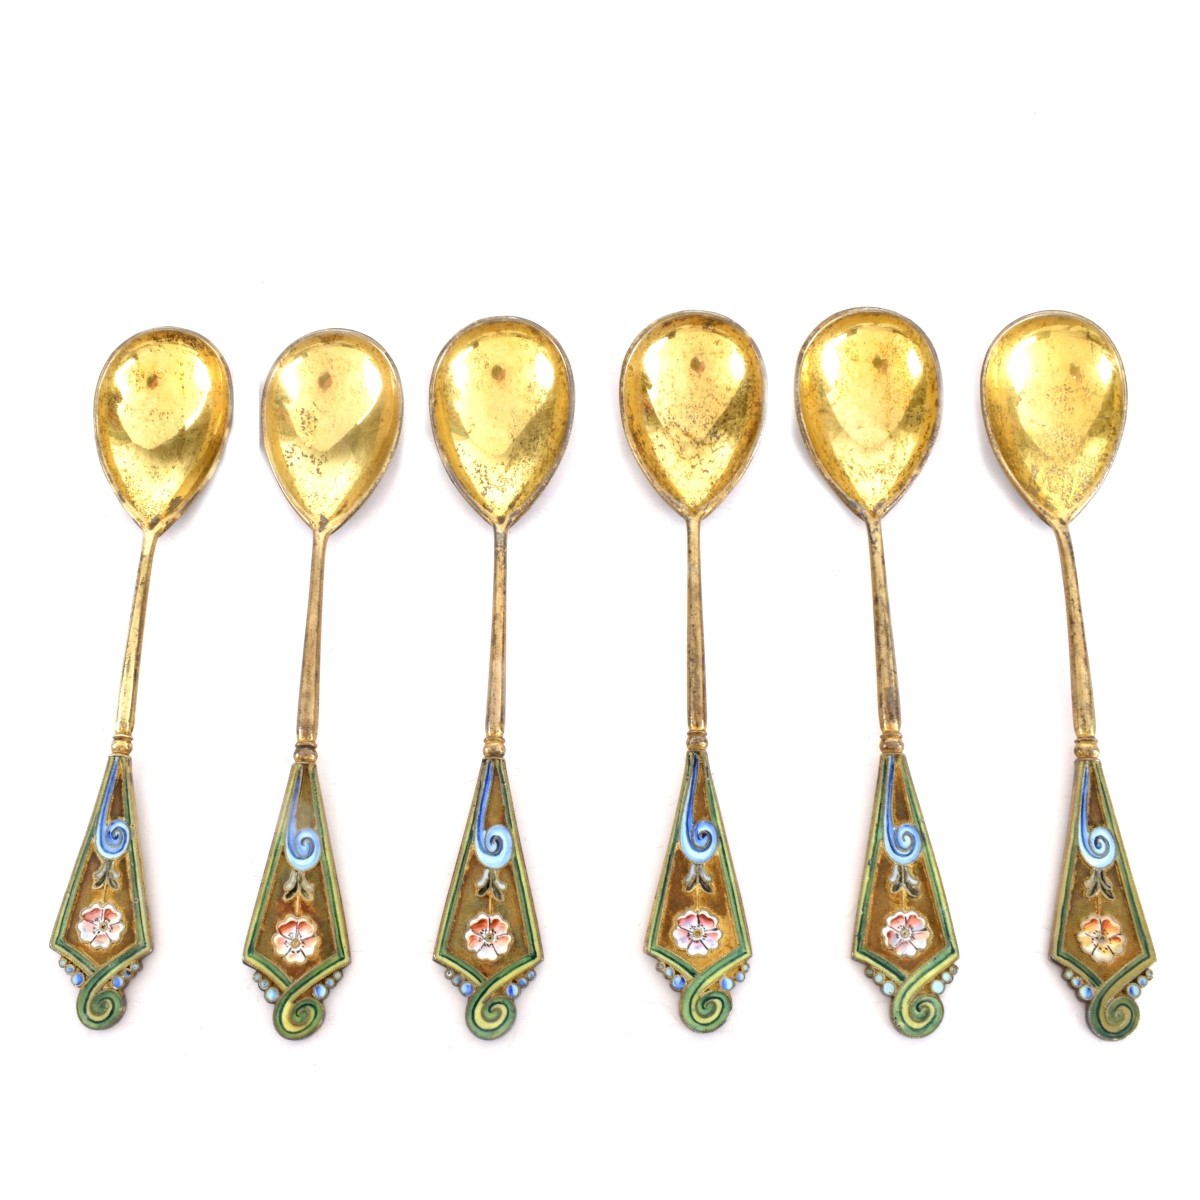 Russian Enamel Silver Spoons